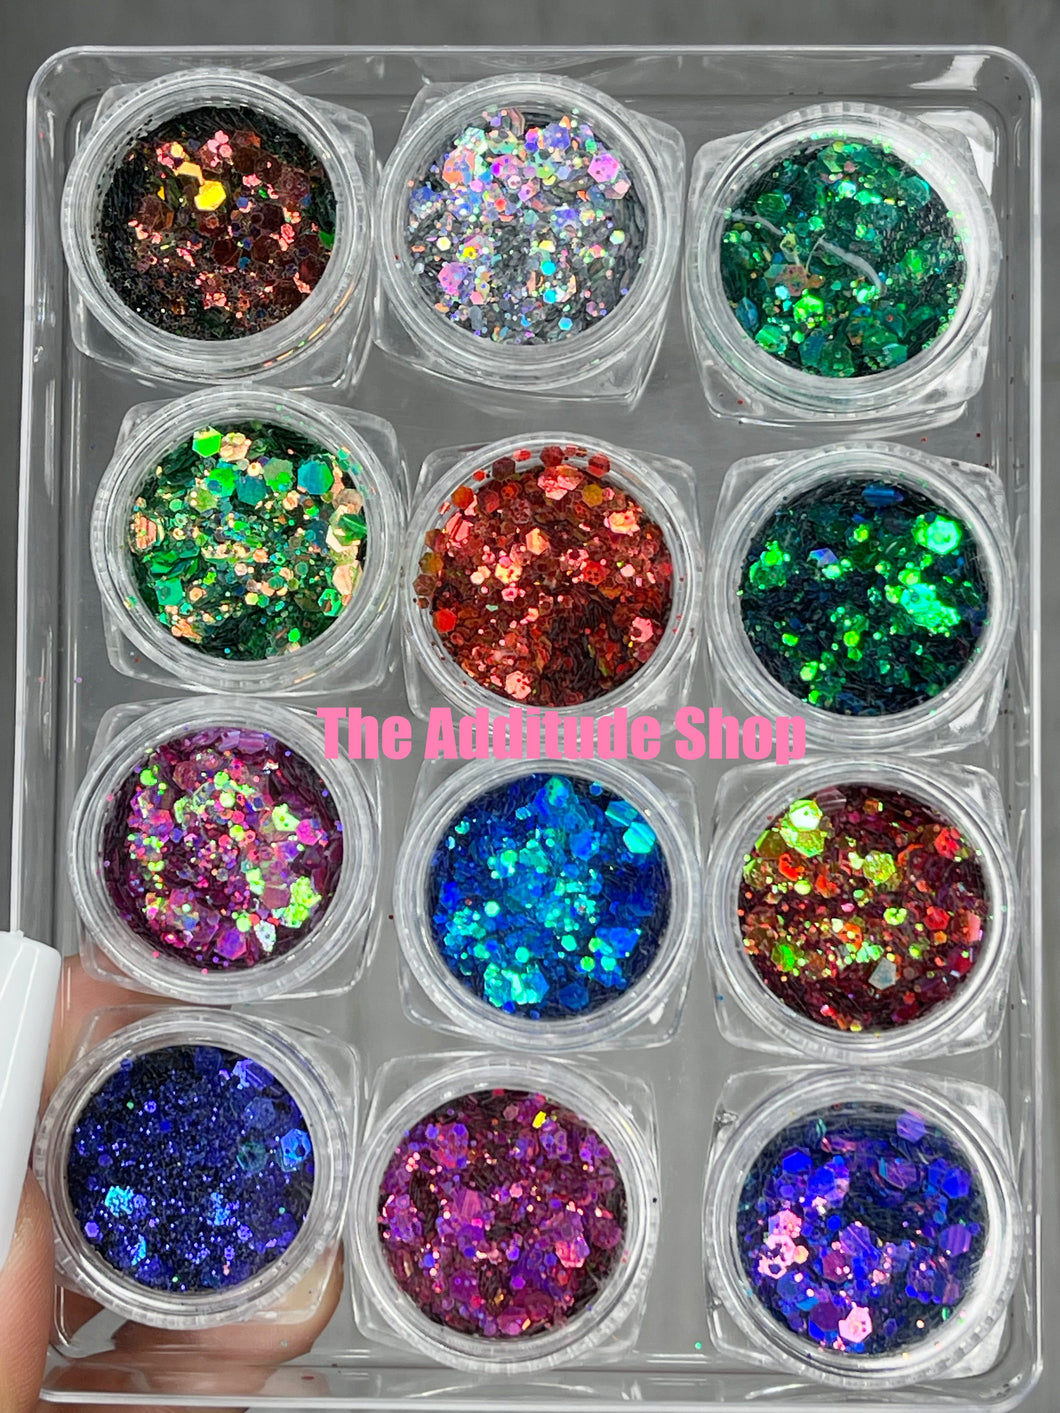 Chameleon Colorshift 12 Grids Nails Glitters